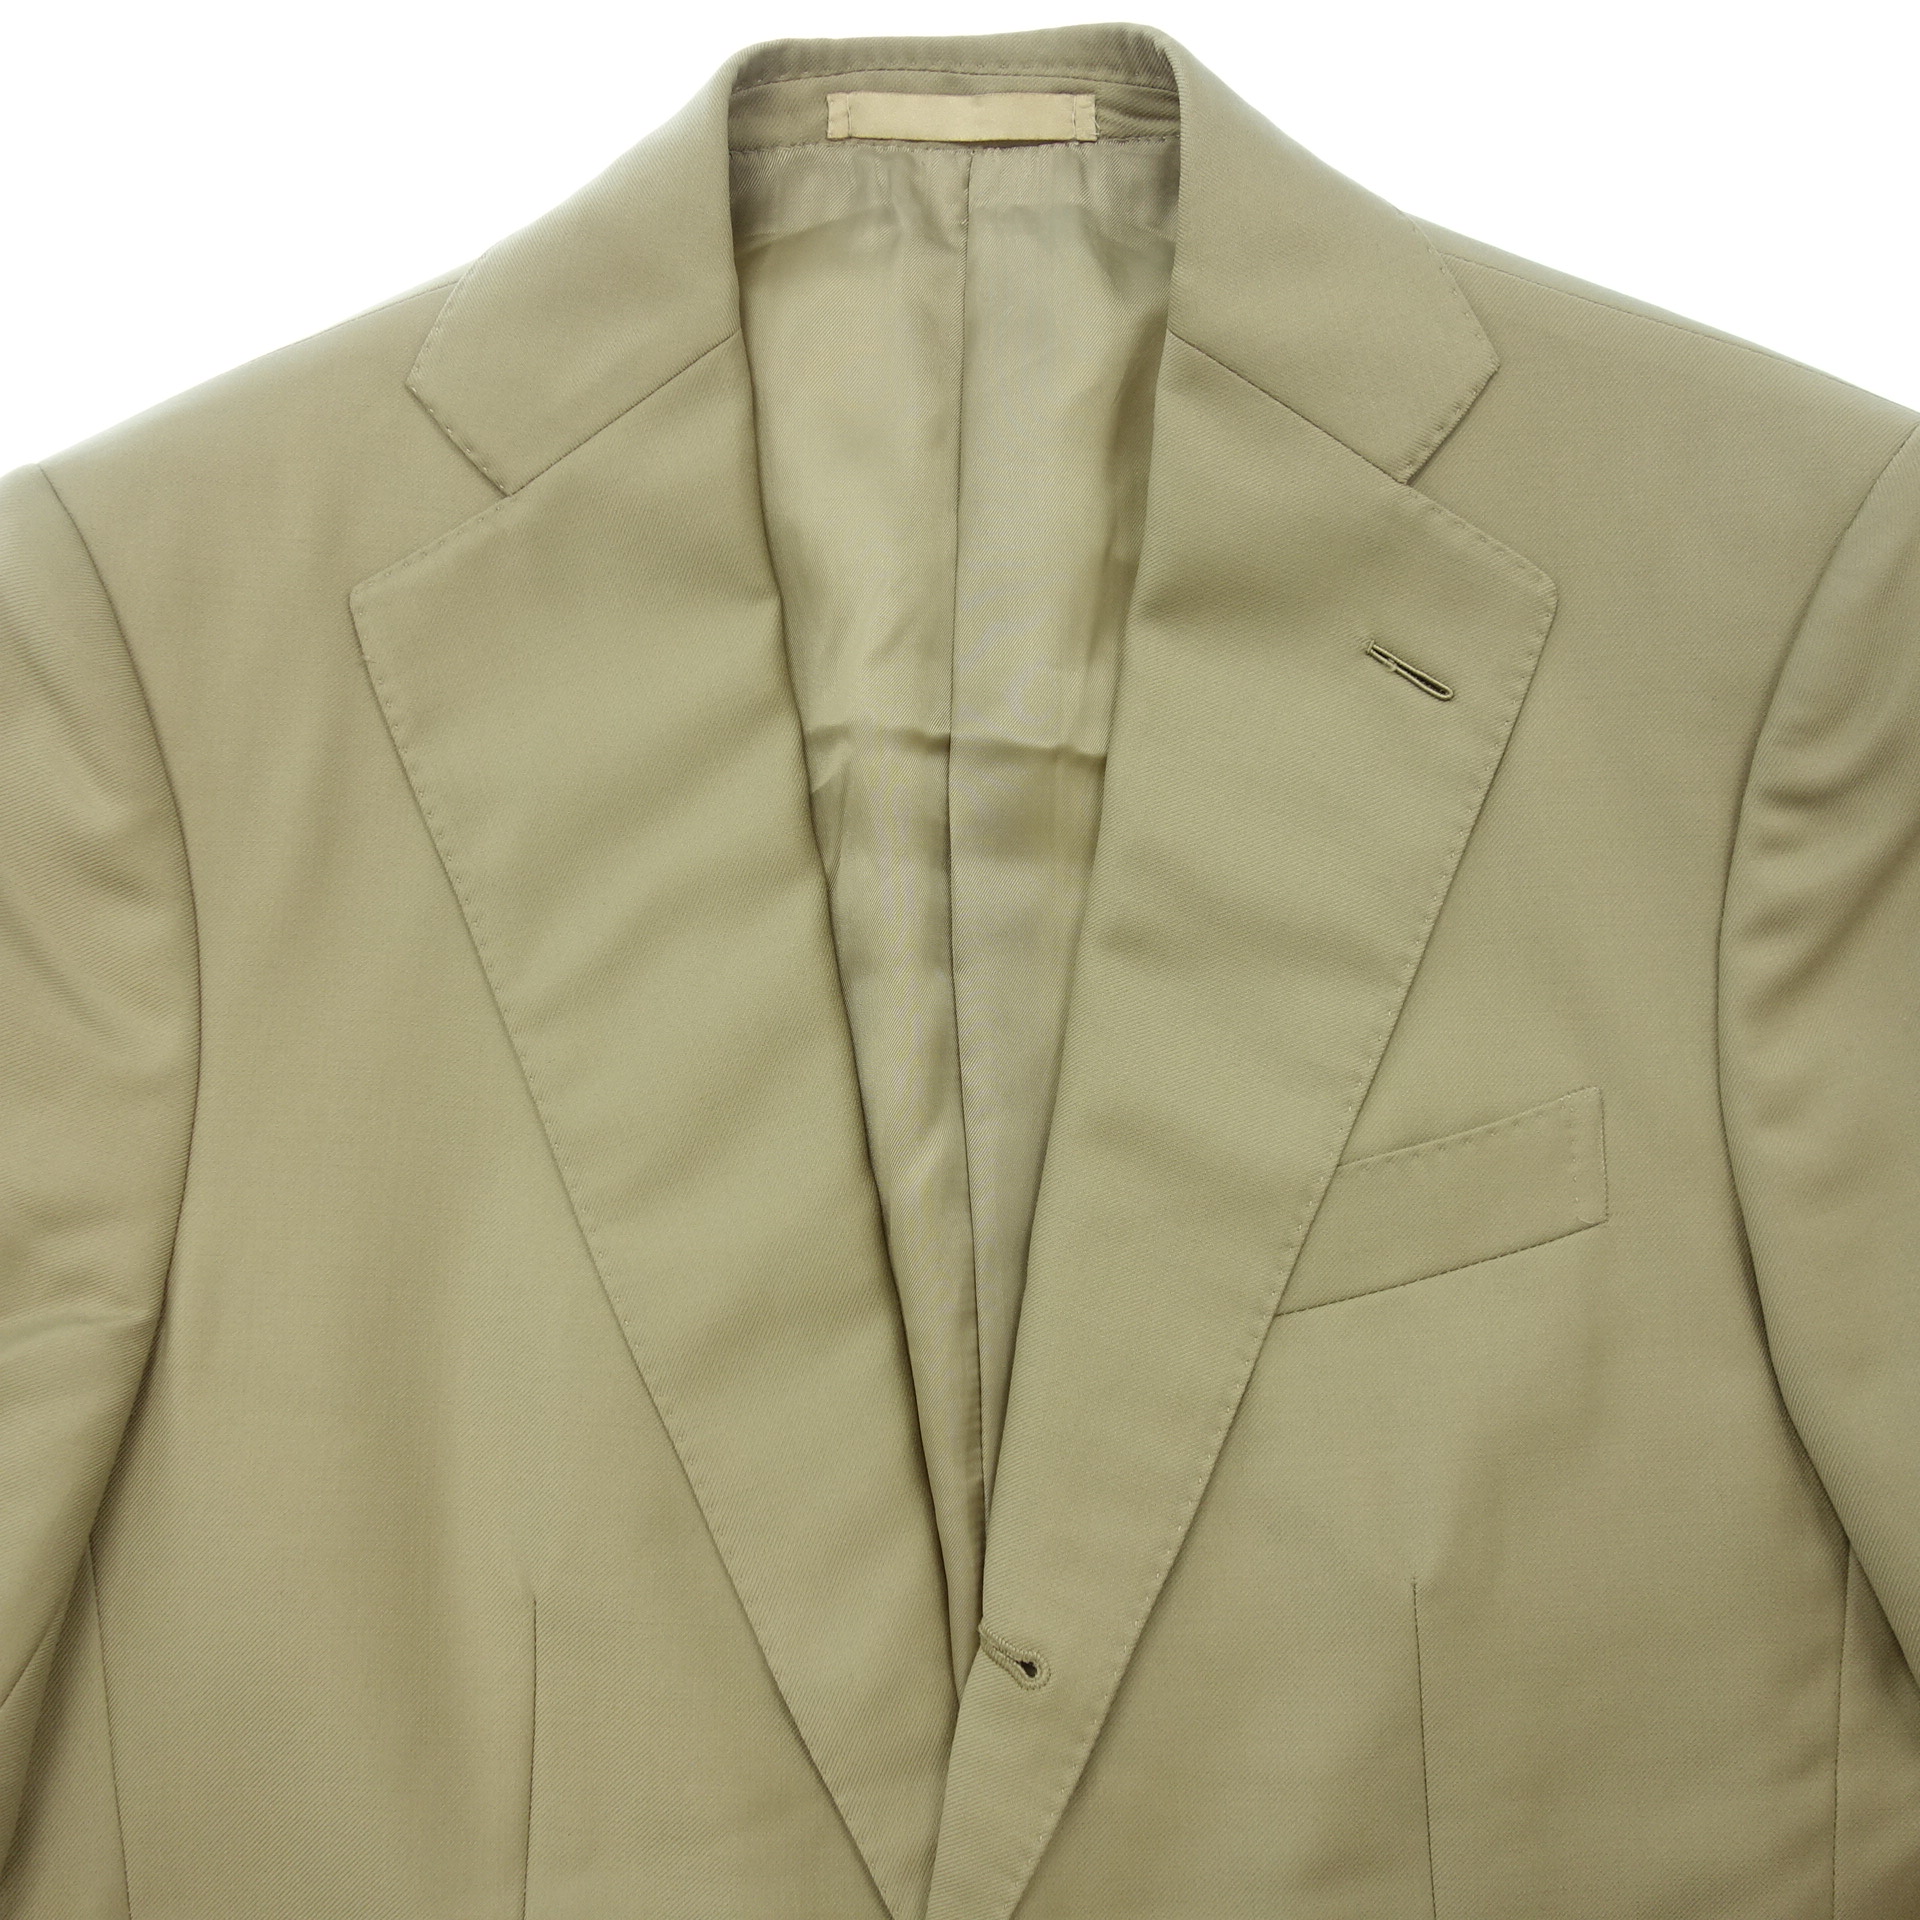 カルーソー シングルスーツ セットアップ 3Bジャケット タックパンツ 